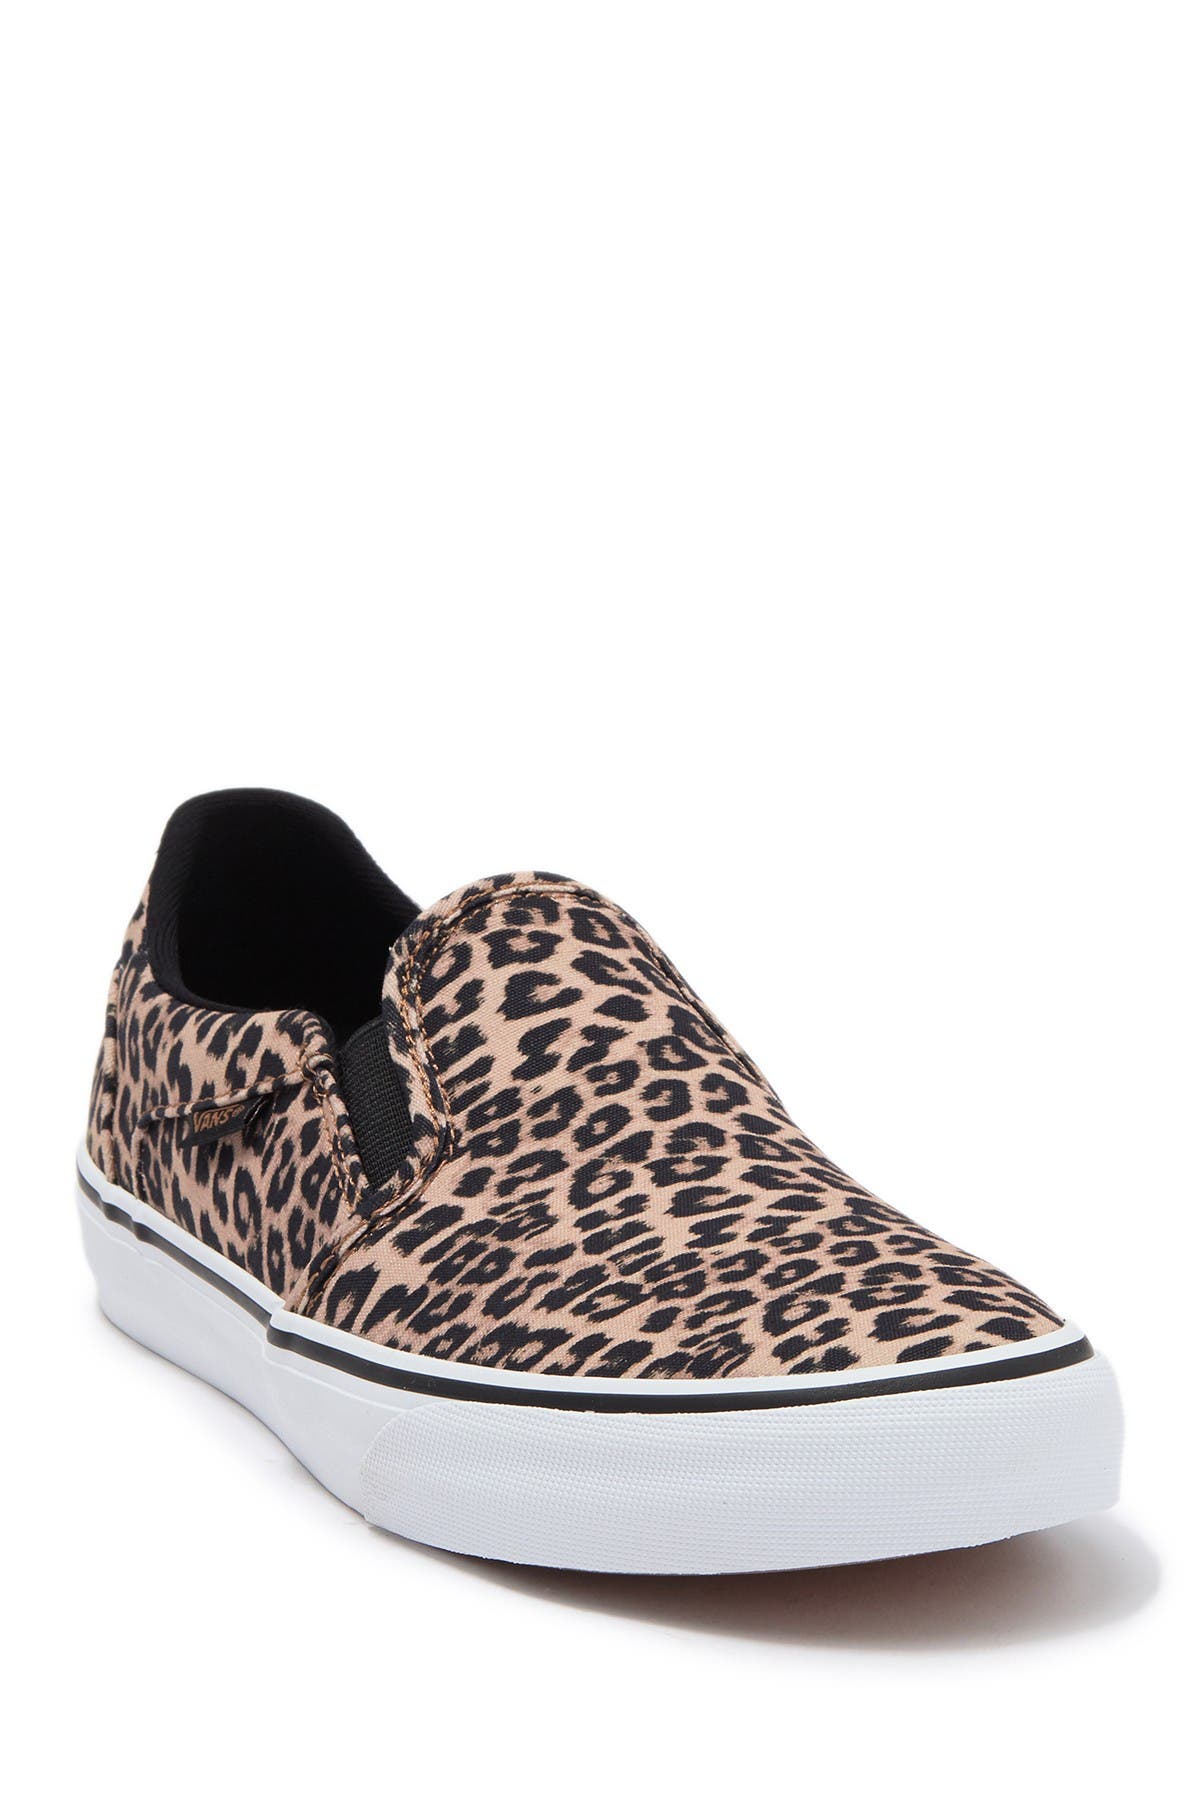 VANS | Asher Deluxe Cheetah Sneaker 